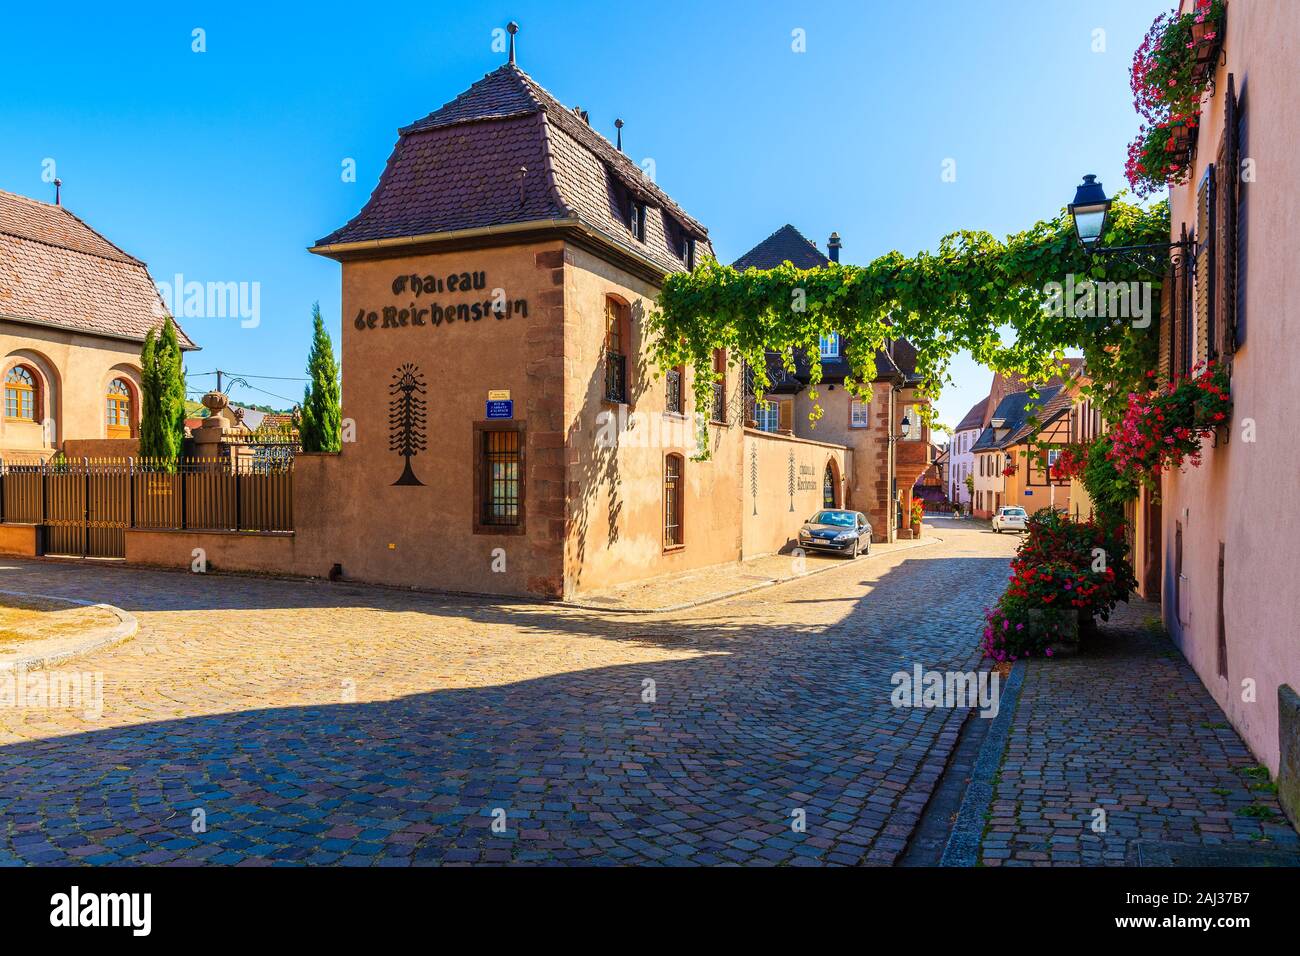 La región vinícola de Alsacia, Francia - Sep 20, 2019: Calle con casas típicas de Kaysersberg pintoresco pueblo que se encuentra en la ruta del vino de Alsacia, Fran. Foto de stock